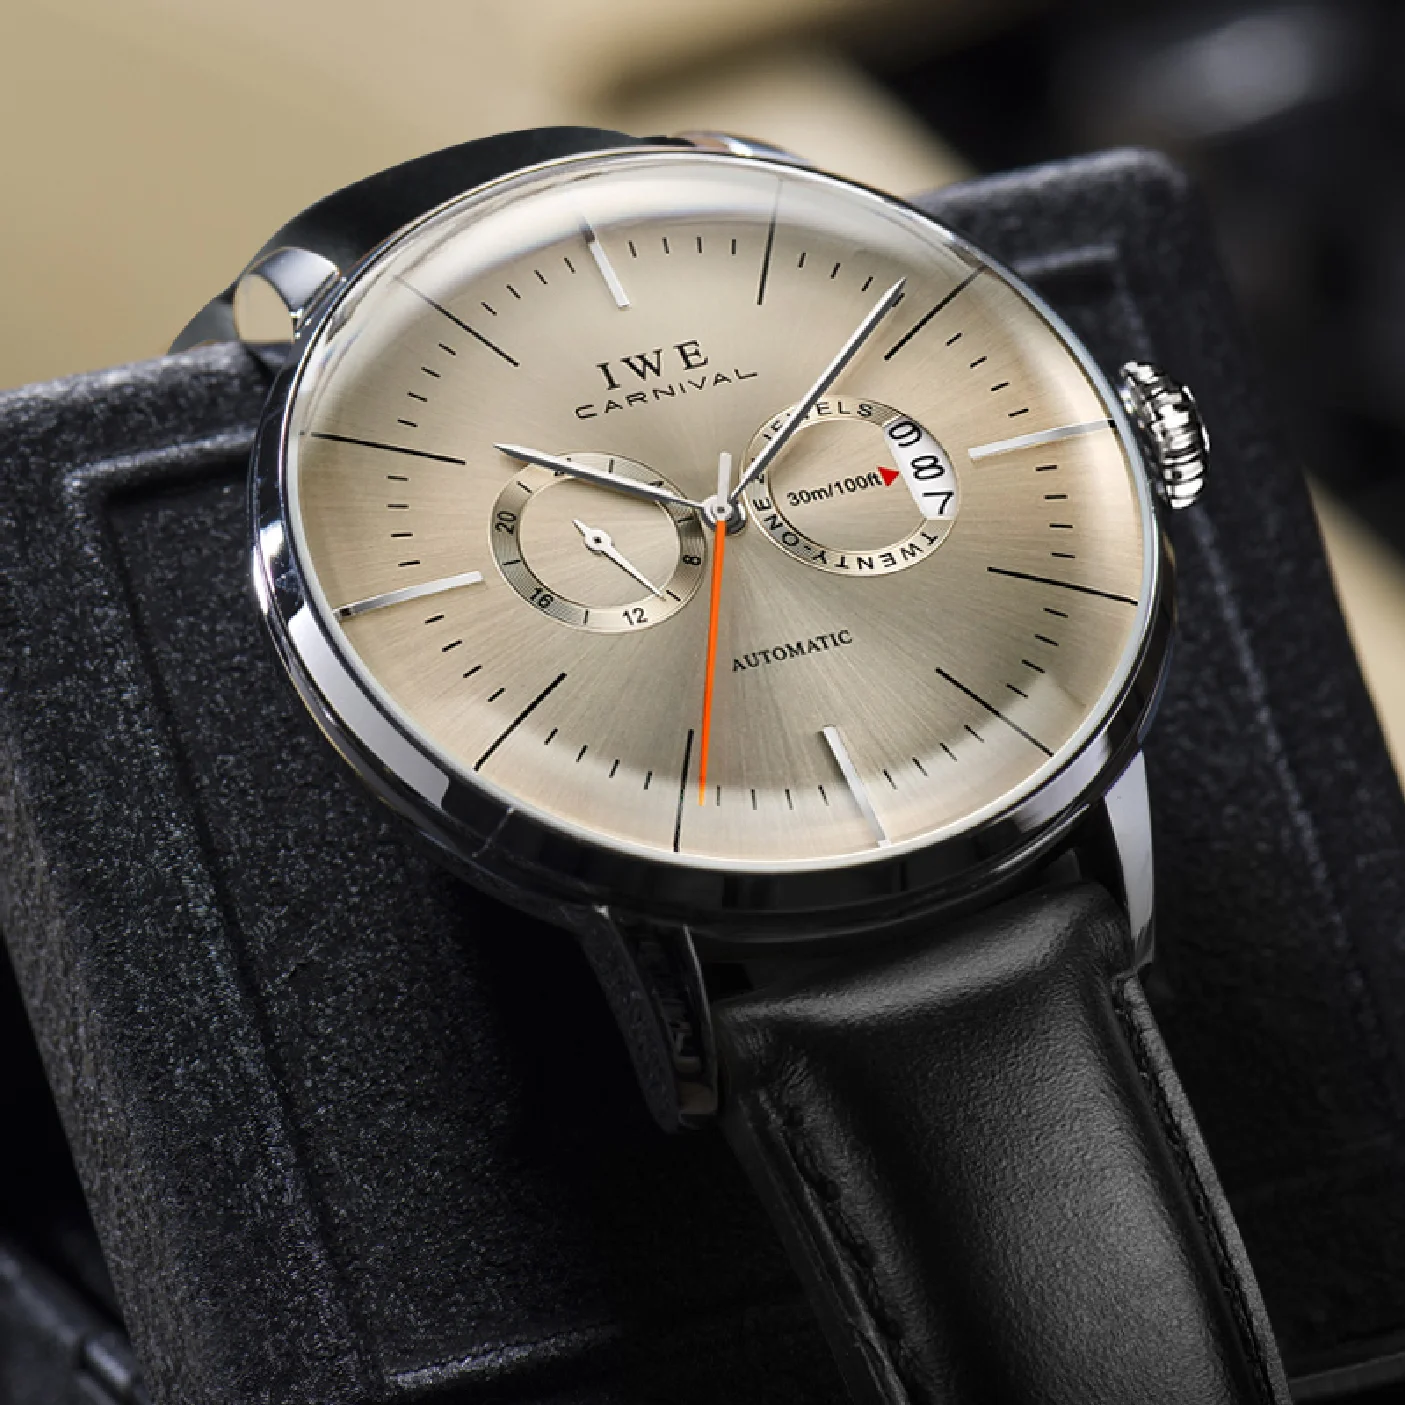 

CARNIVAL Sapphire Glass MIYOTA Movement GMT Mechanical Watches 30m Waterproof Classic Fashion Luxury Automatic Watch